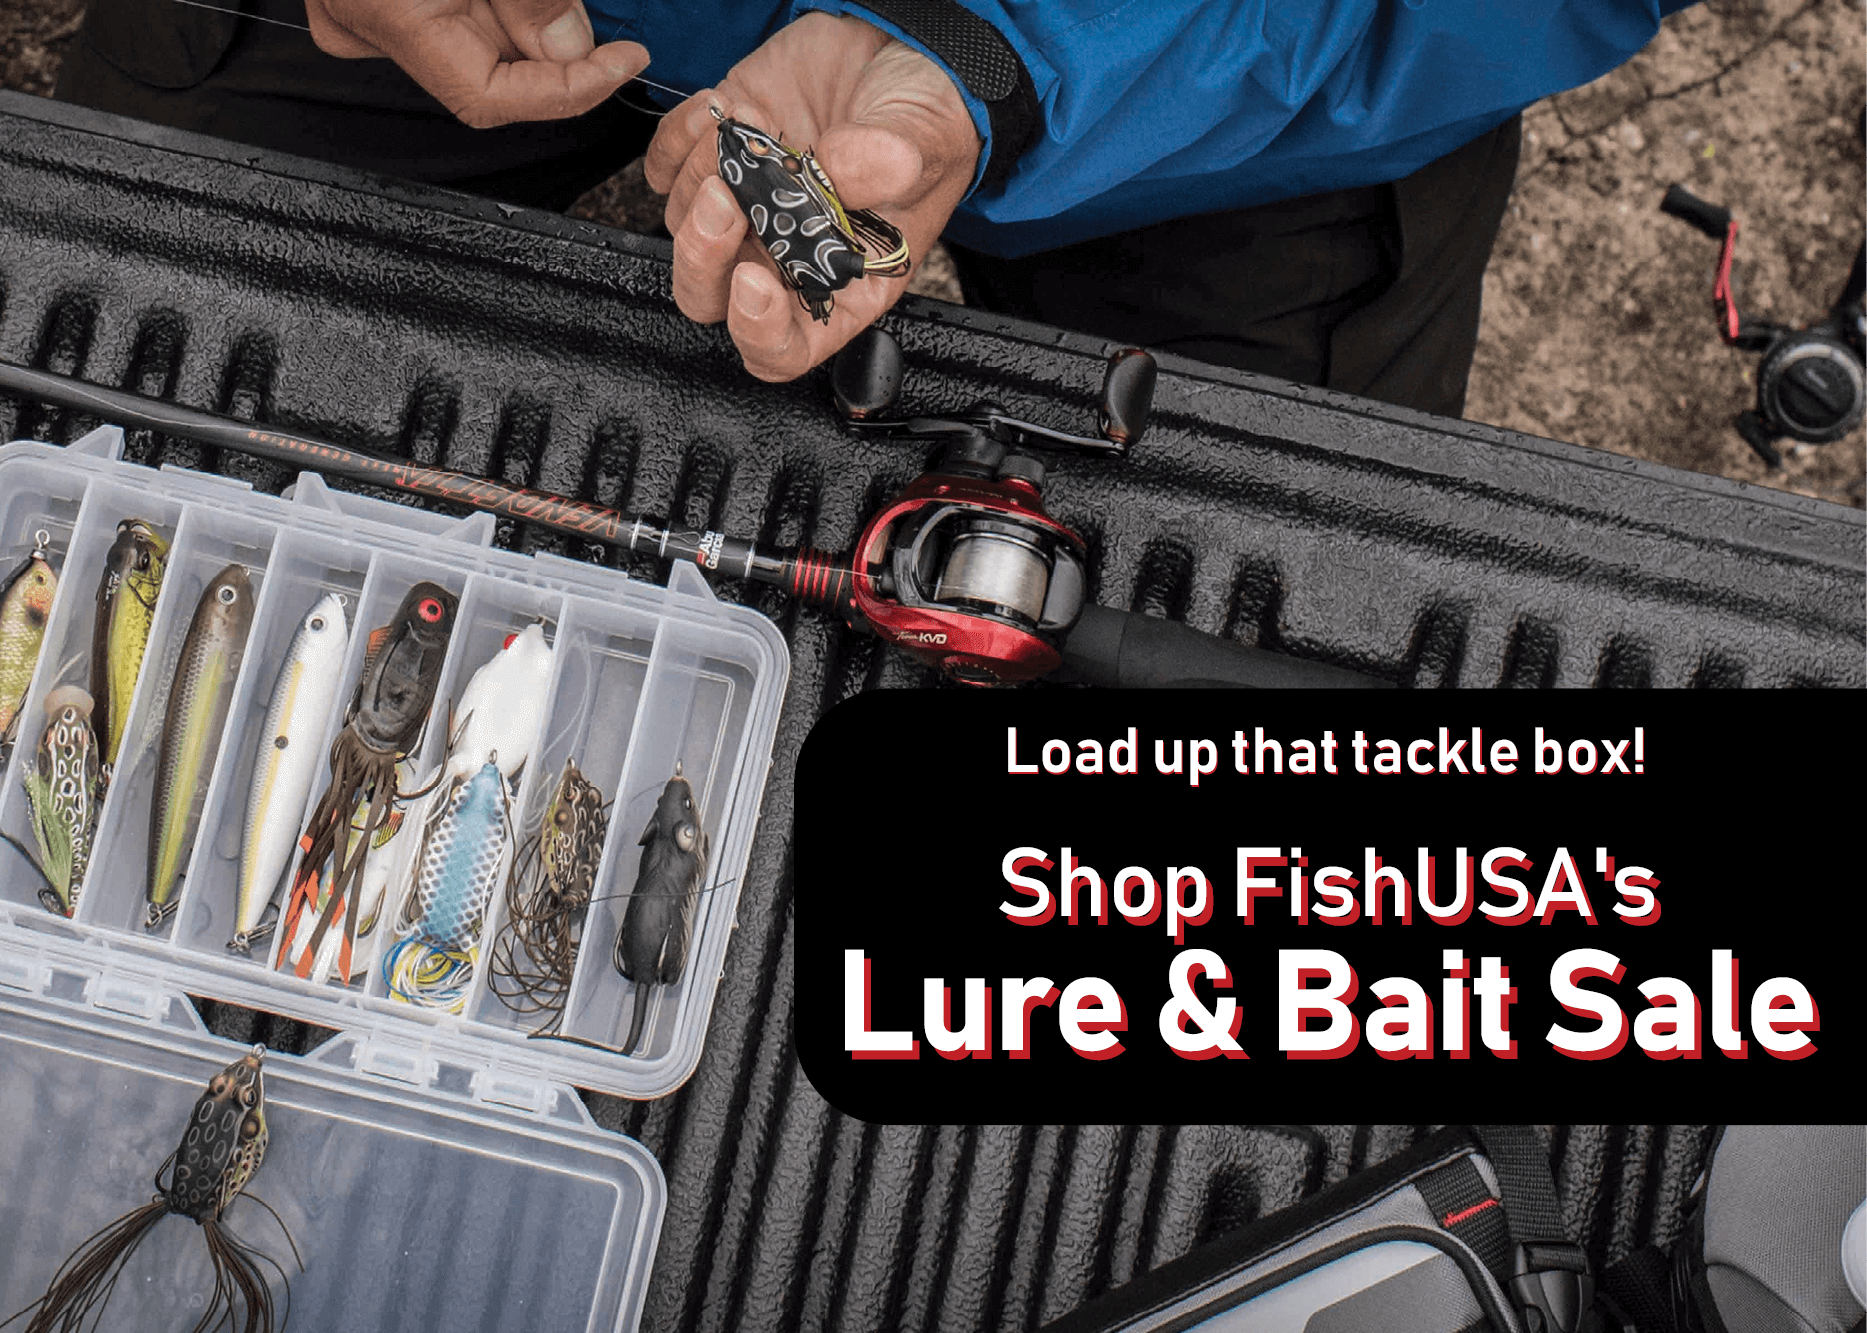 Shop FishUSA's Lure & Bait Sale!